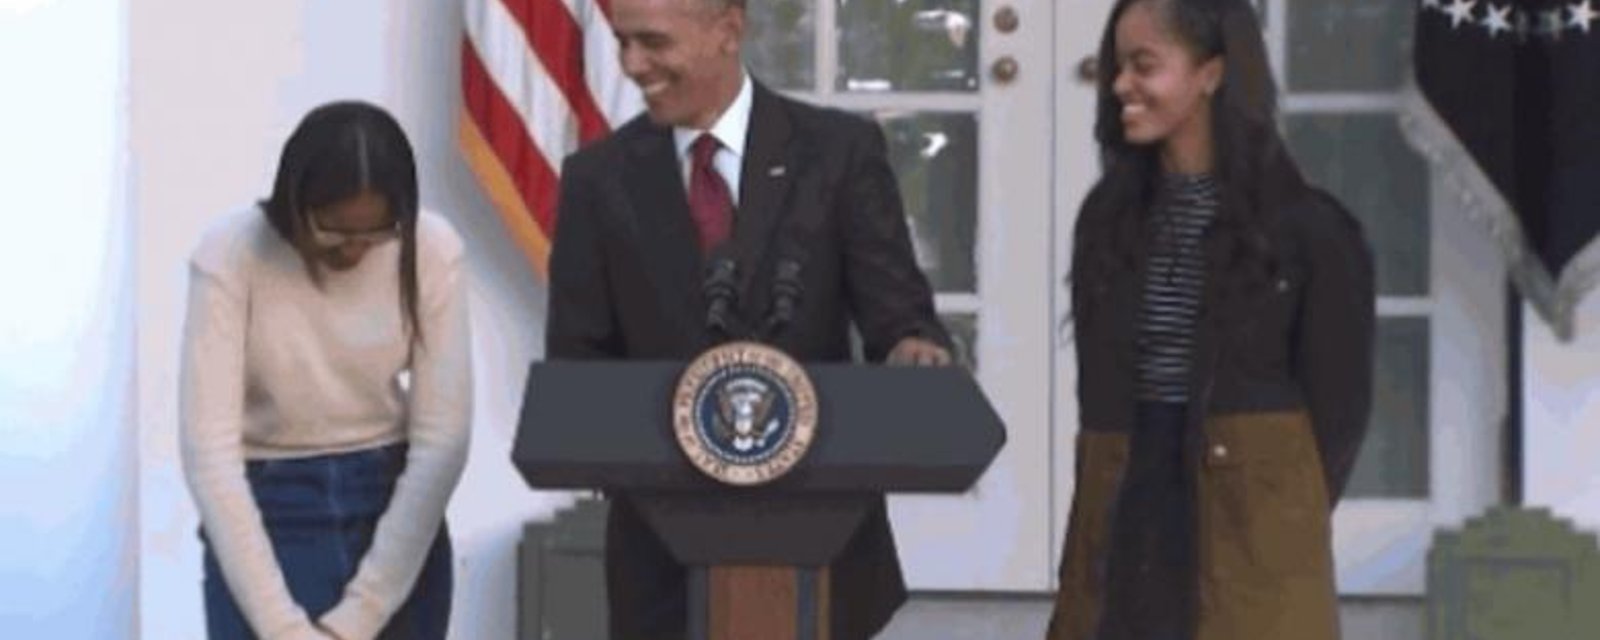 Obama fait une blague imprévue pendant une conférence de presse! 